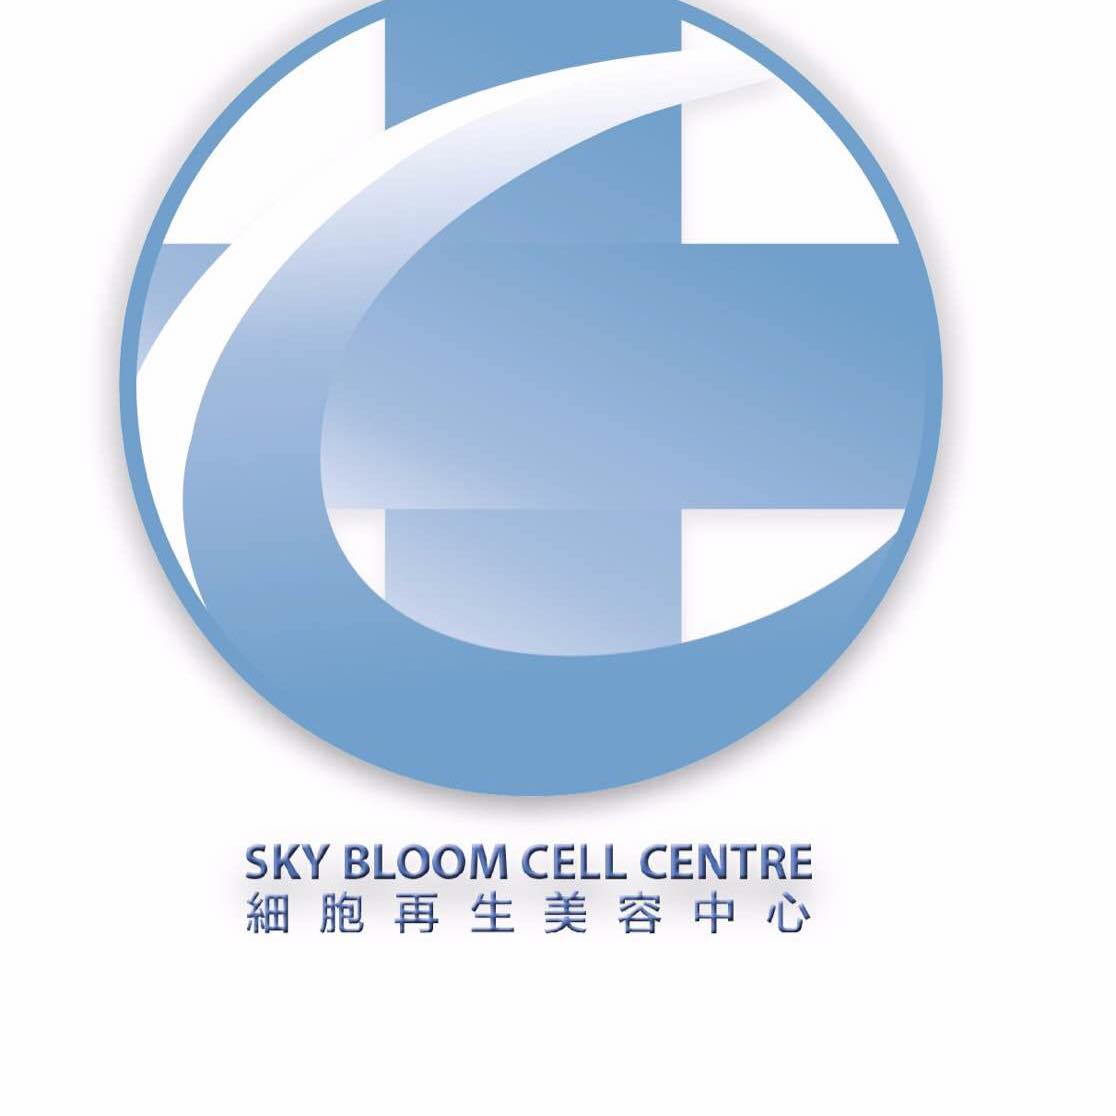 : Sky Bloom Cell Beauty Centre 細胞再生美容中心